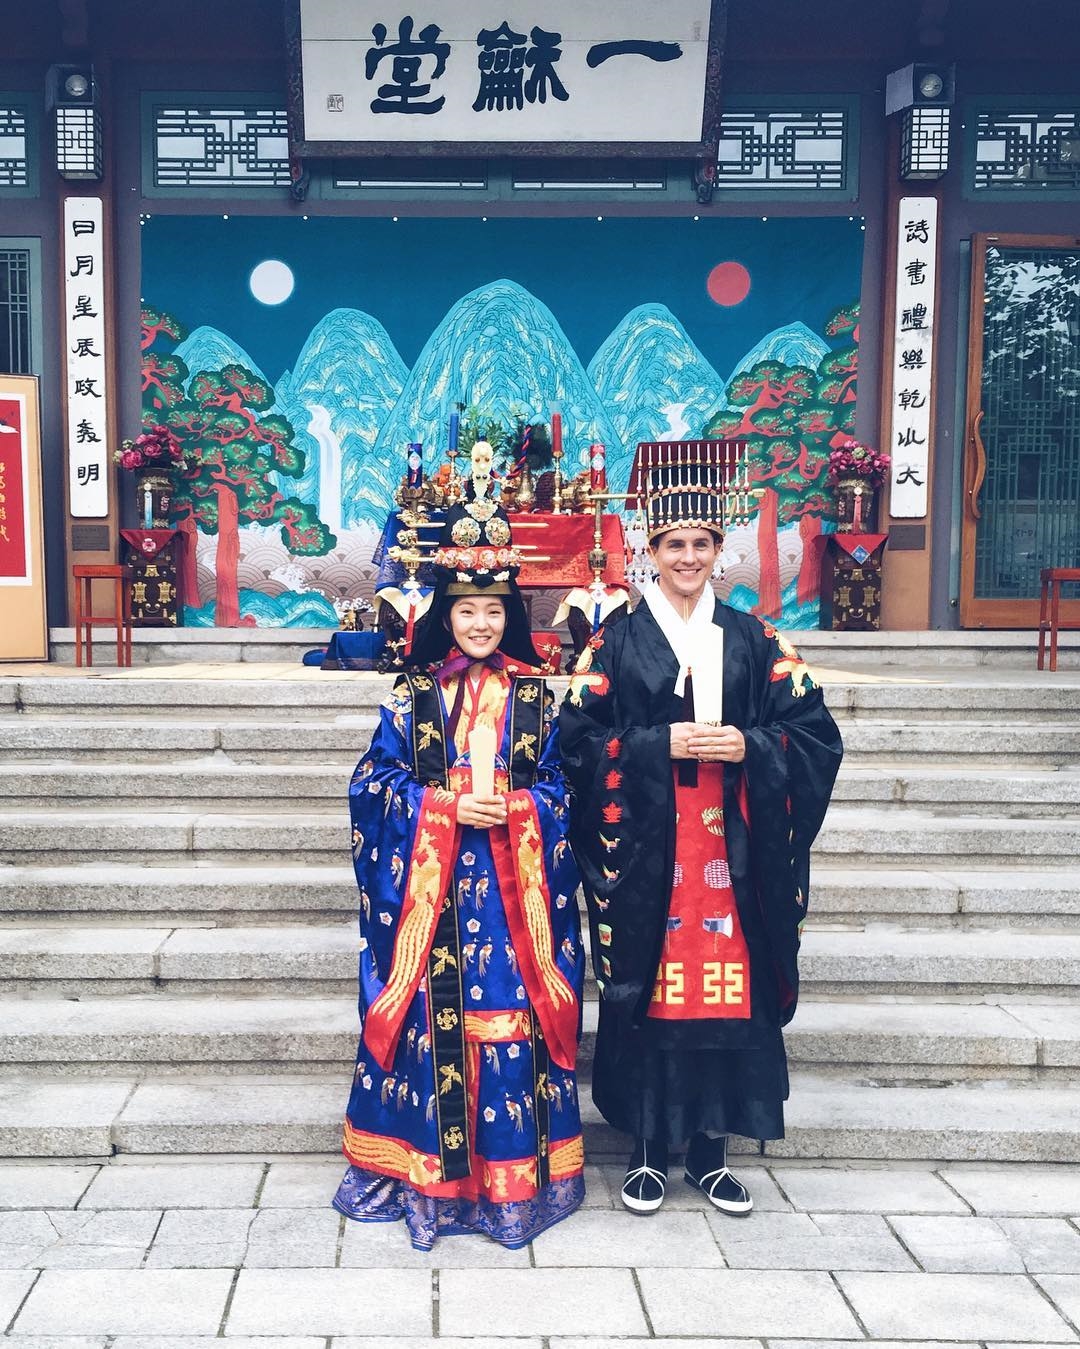 Trang phục truyền thống ngày Tết tuyệt đẹp của phụ nữ châu Á | baotintuc.vn